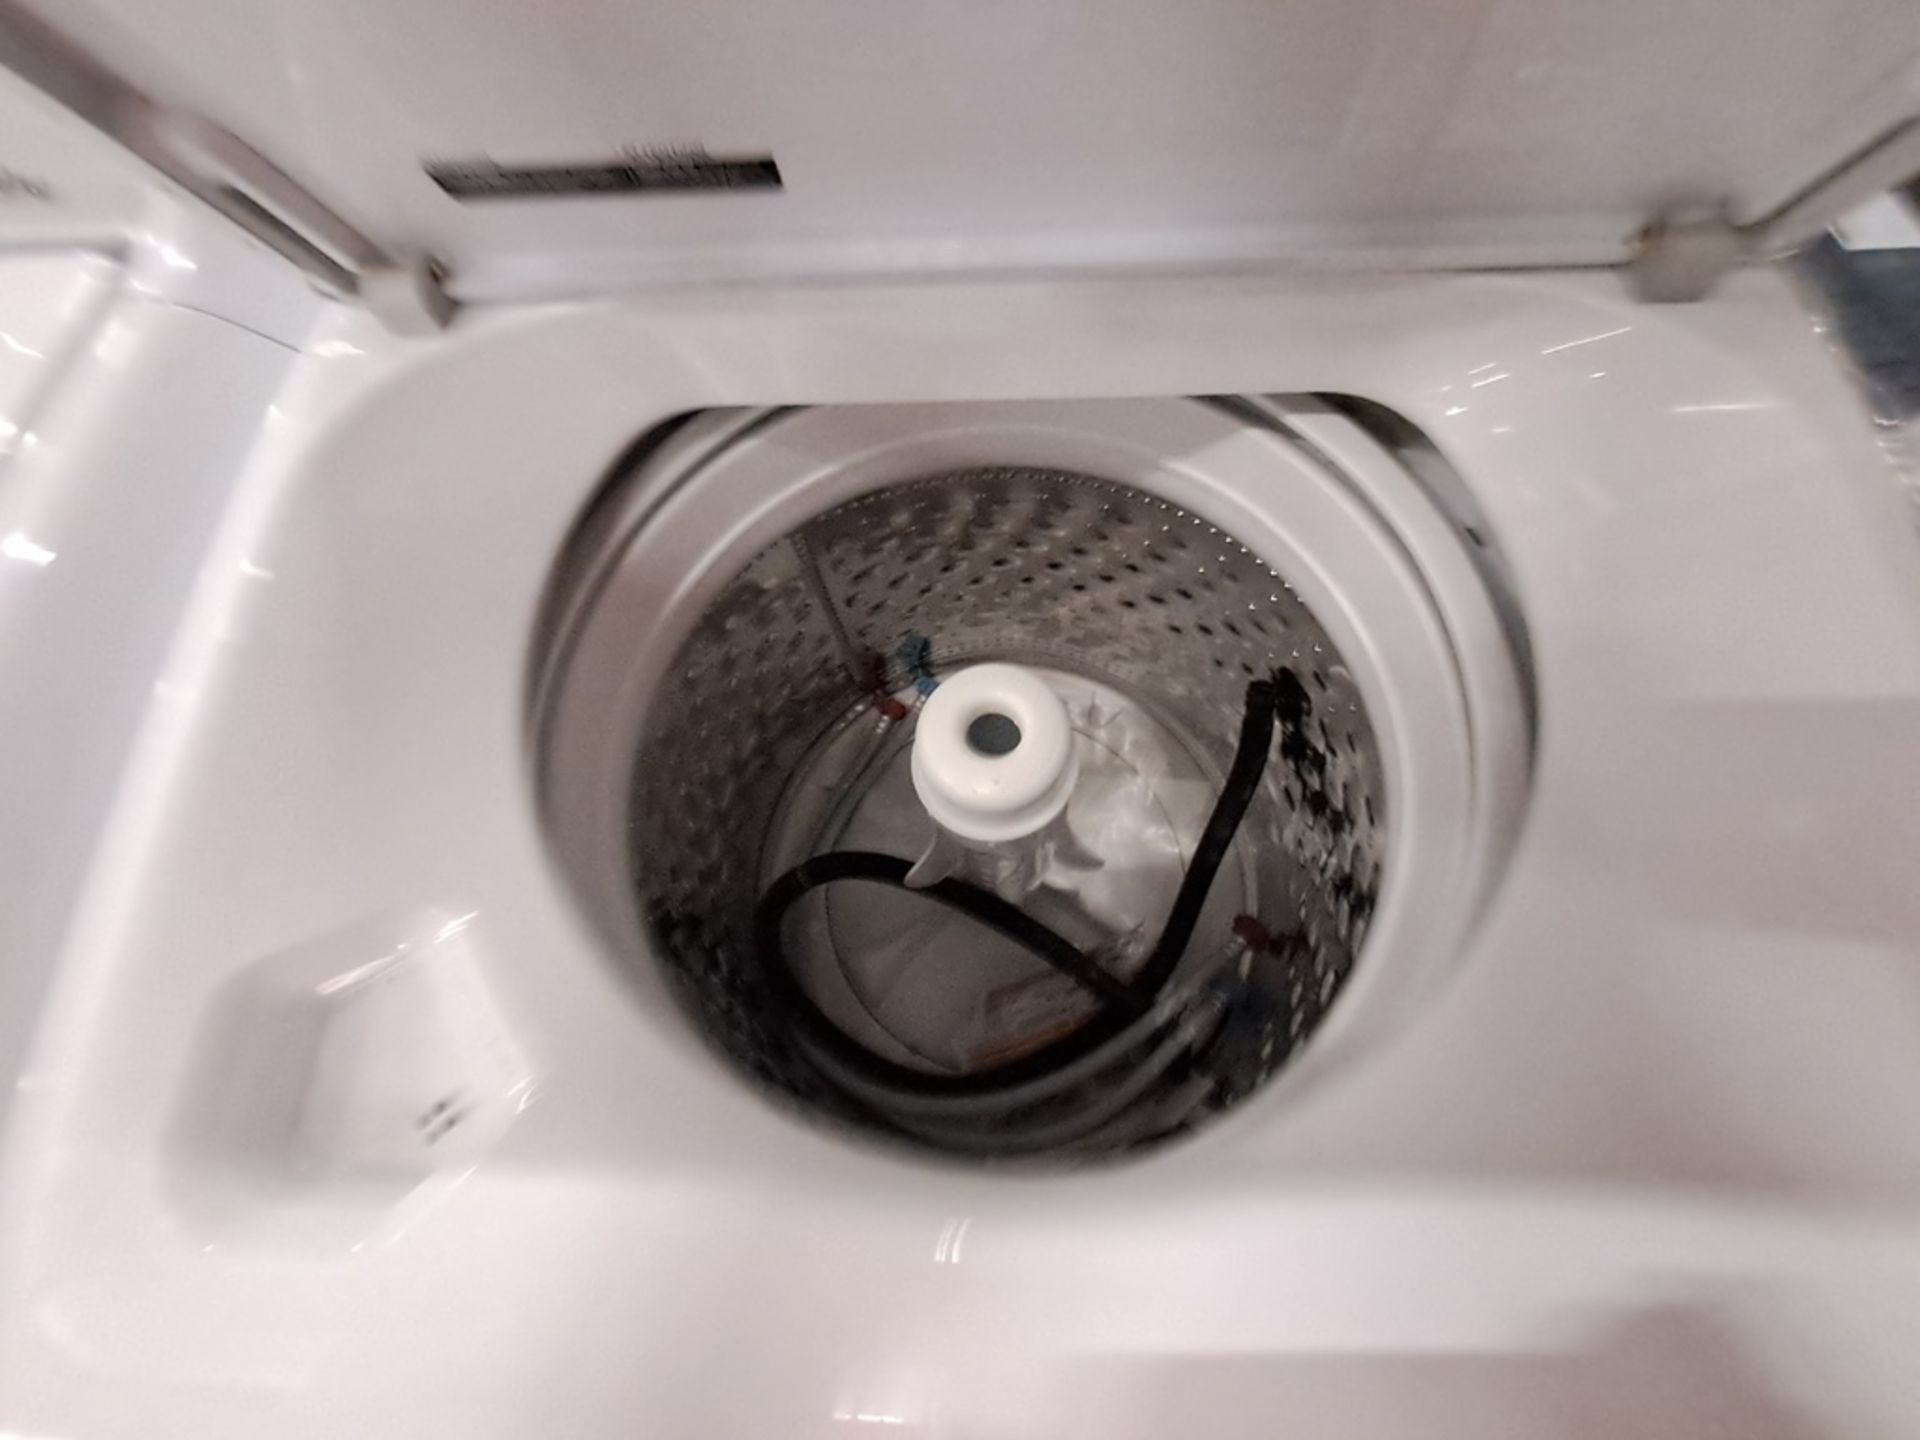 Lote de 2 lavadoras contiene: 1 Lavadora DE 20 KG Marca MABE, Modelo LMA70213CBAB02, Serie S12888, - Image 5 of 7